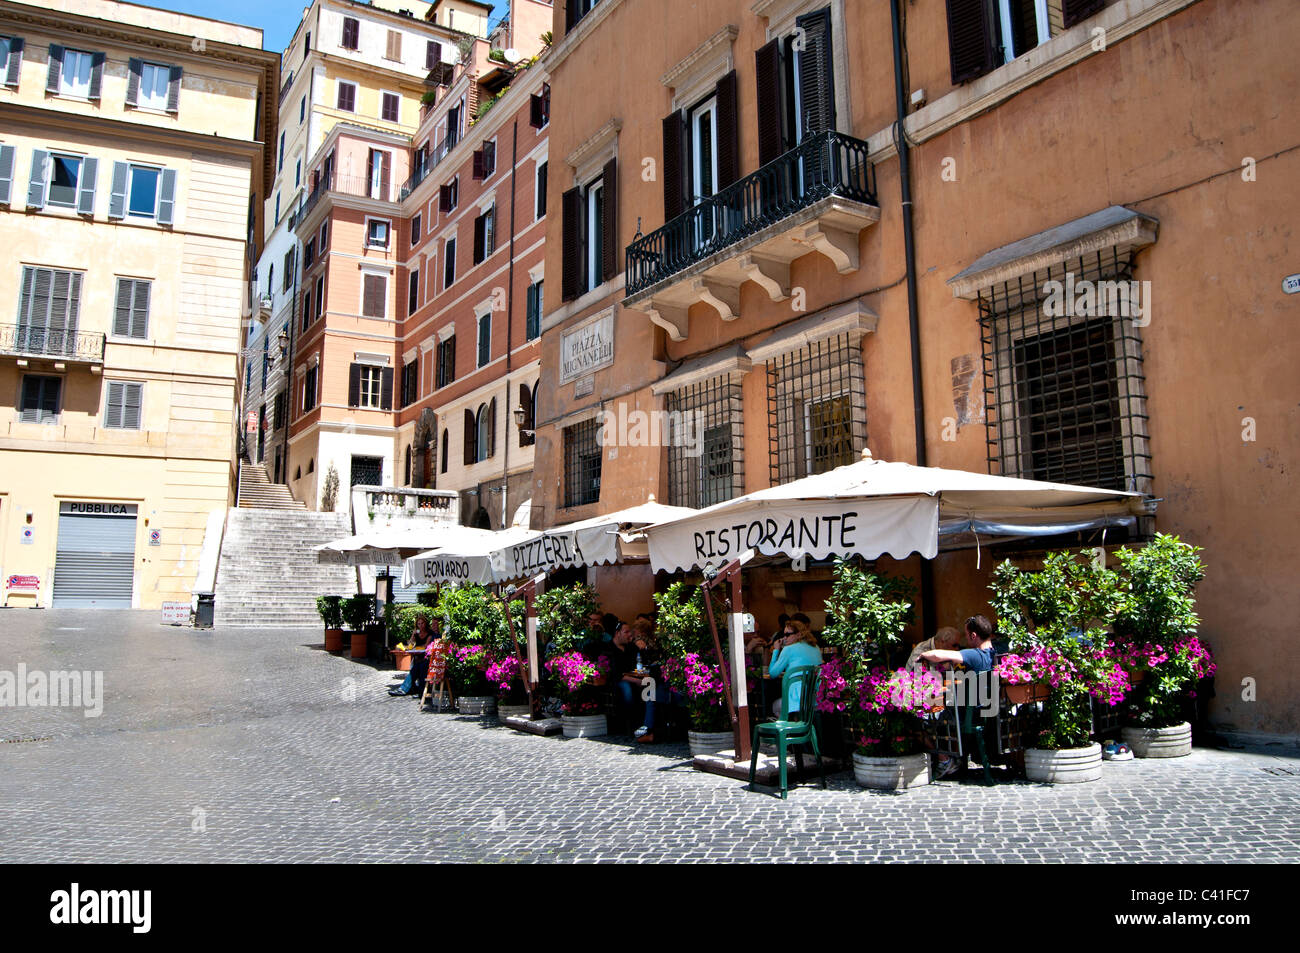 Straßenszene aus Rom Piazza di Spagna - Italienisches restaurant Stockfoto